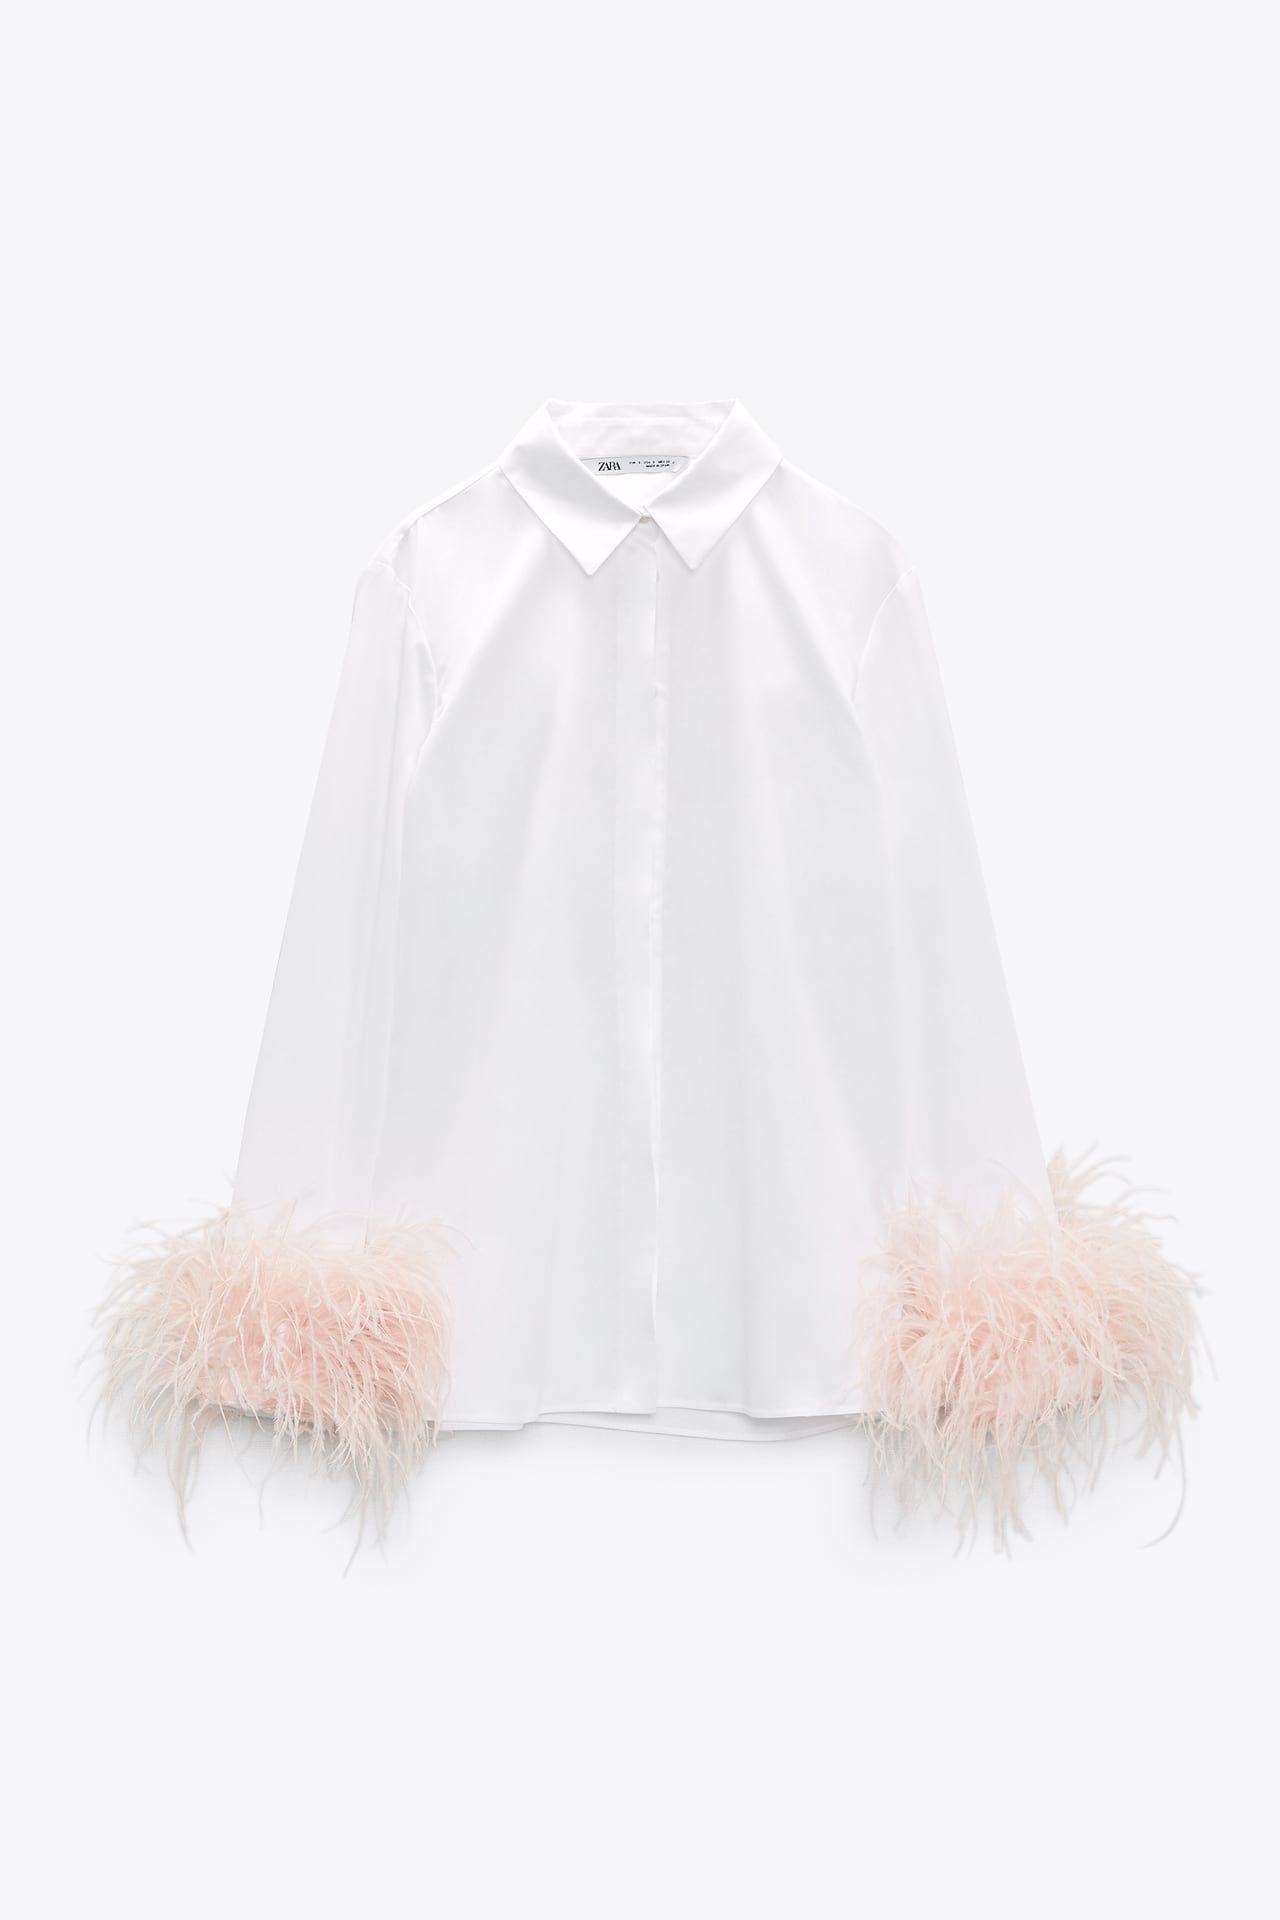 Ζέτα Μακρυπούλια: Βρήκαμε το λευκό πουκάμισο με φτερά που φόρεσε από το  Zara | Ι LOVE STYLE